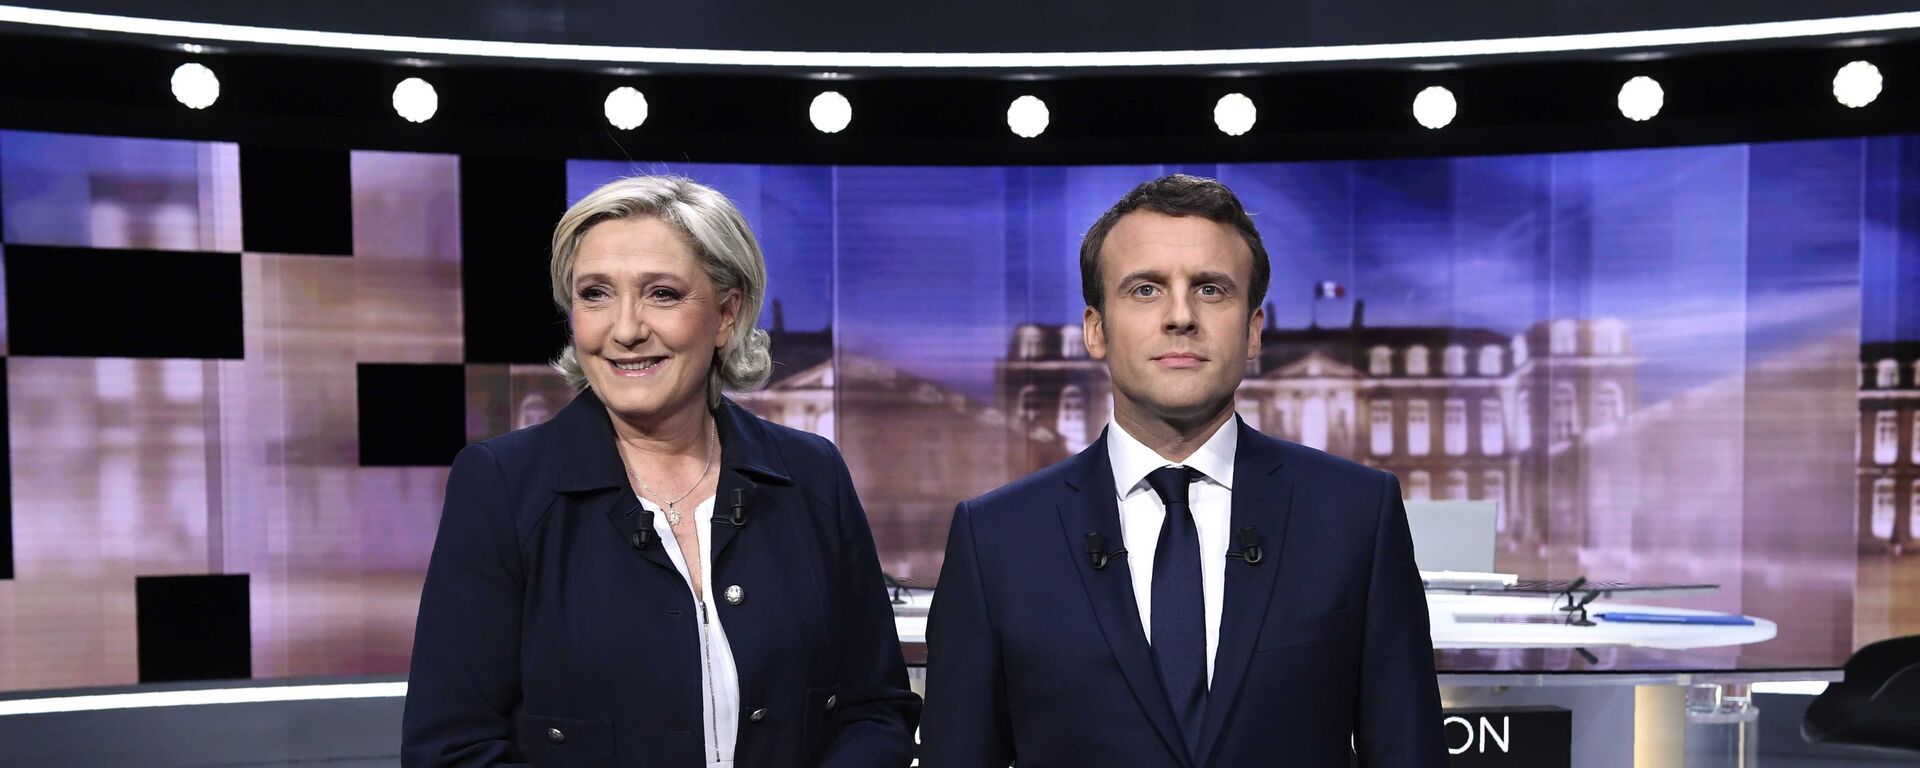 Marine Le Pen e Emmanuel Macron, candidatos das eleições presidenciais na França. - Sputnik Brasil, 1920, 12.04.2022